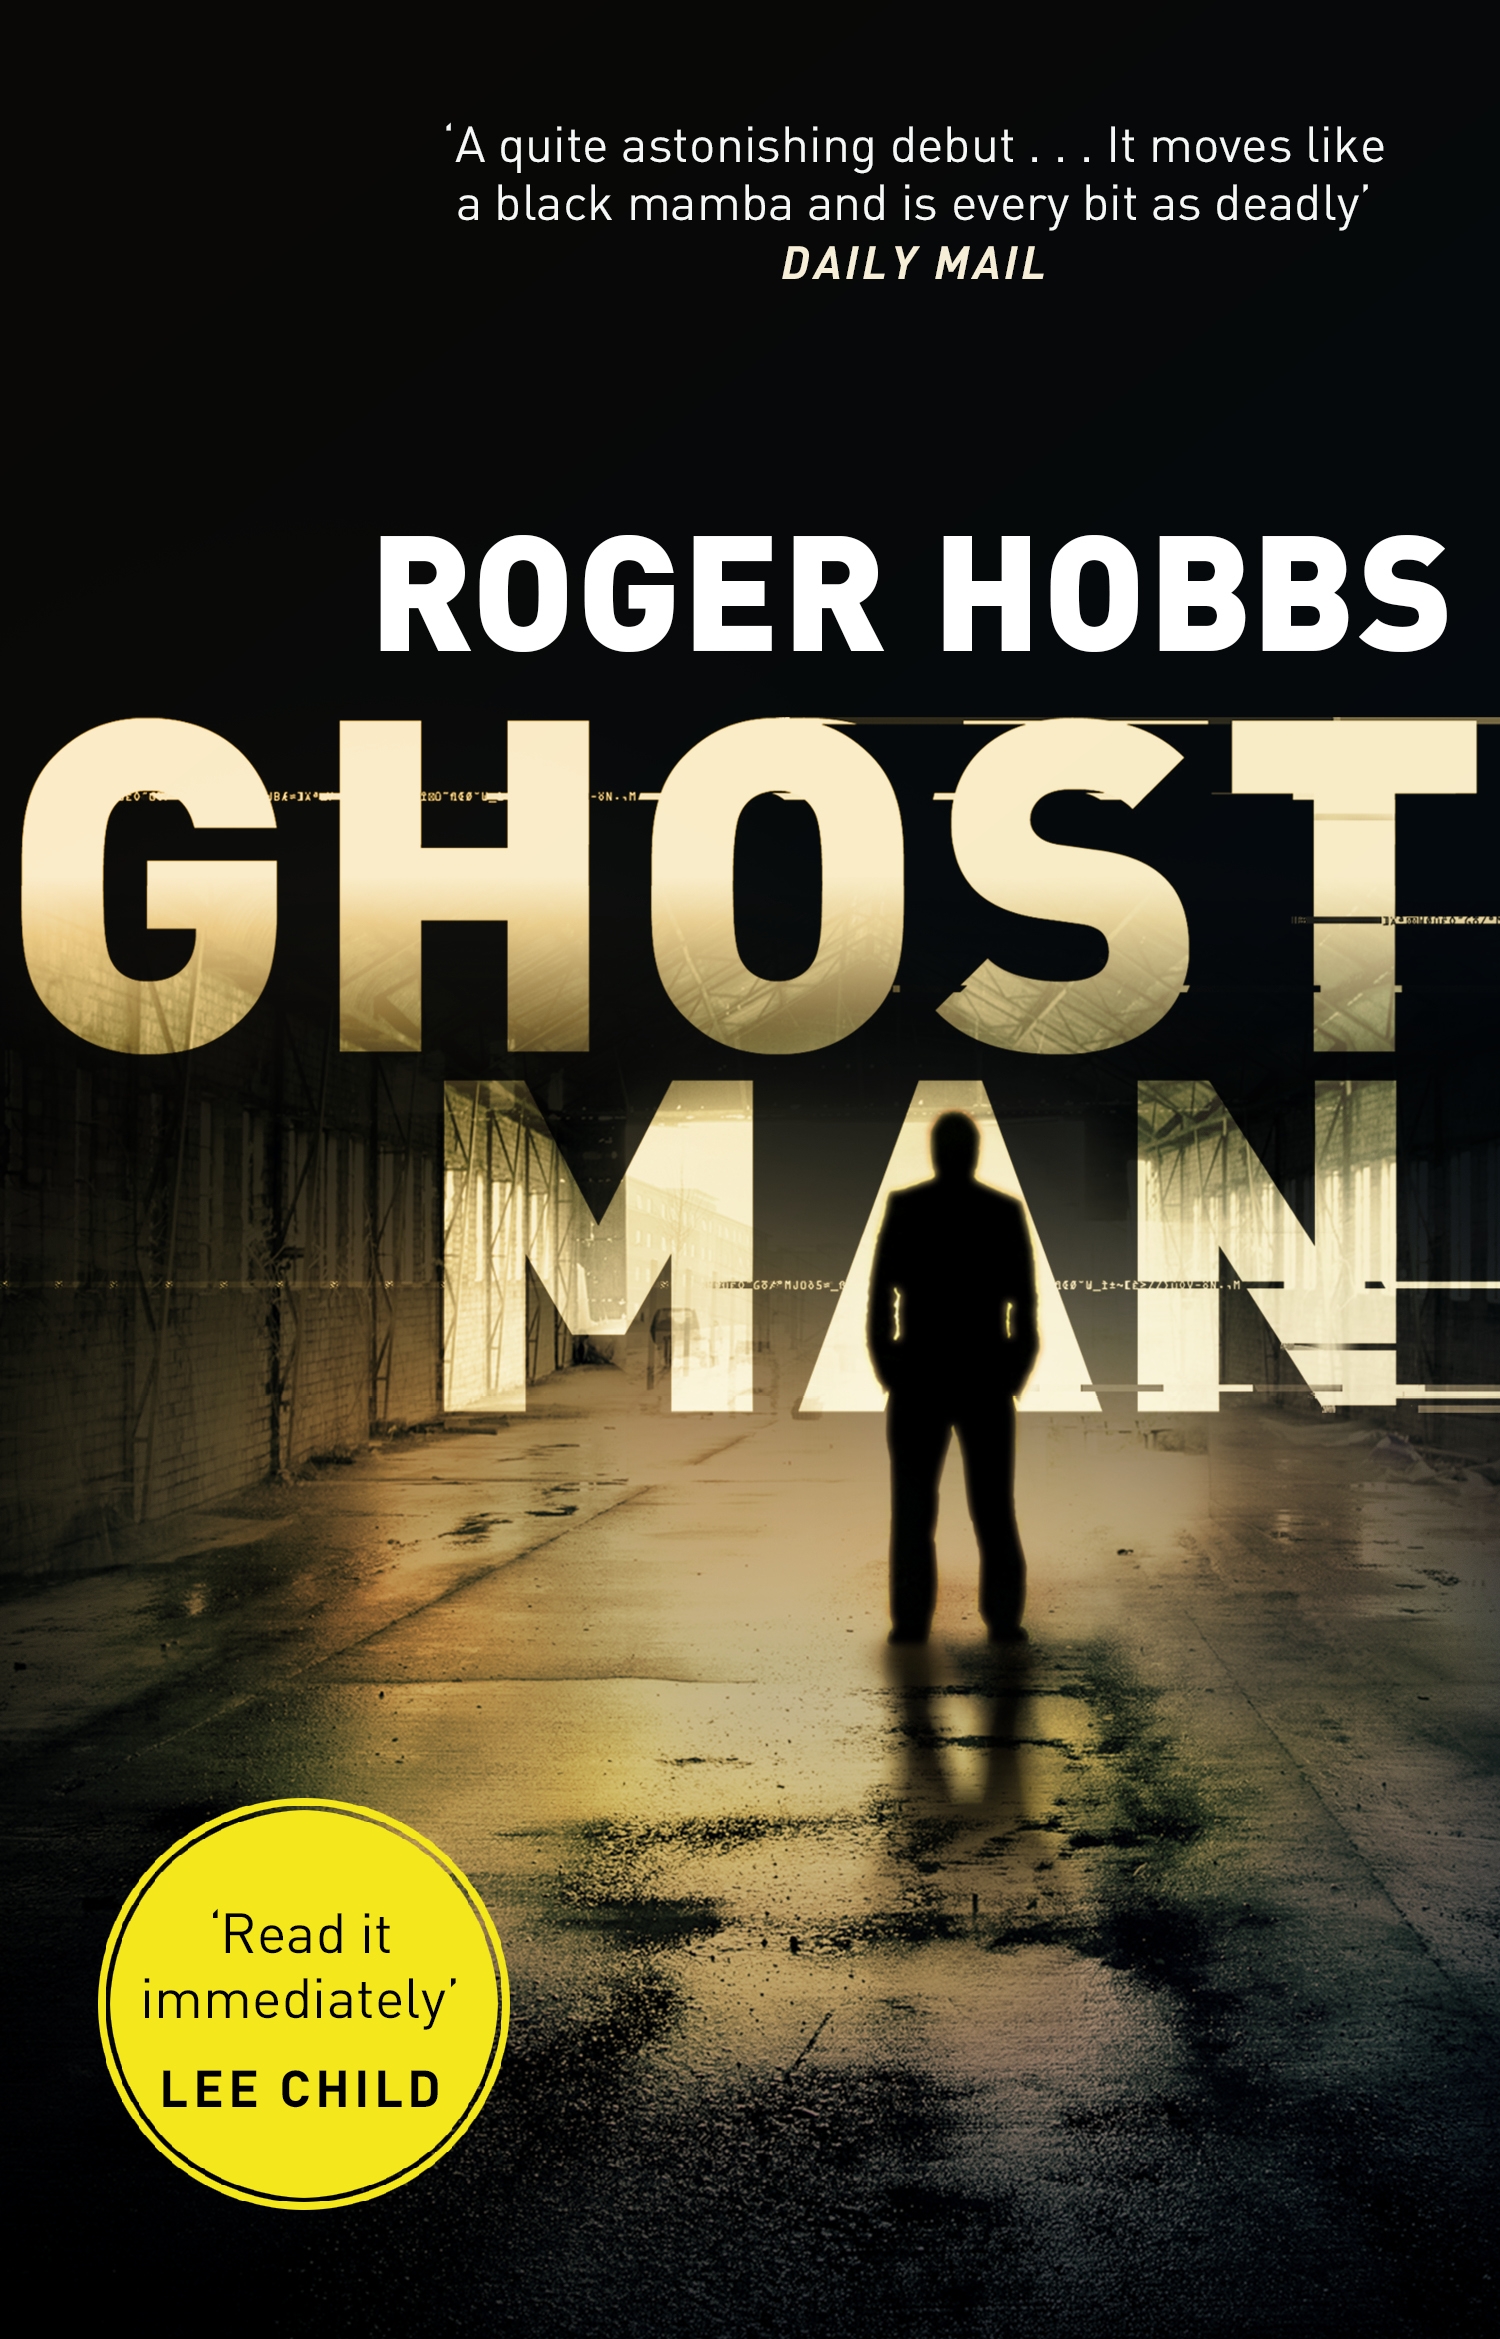 roger hobbs ghostman series